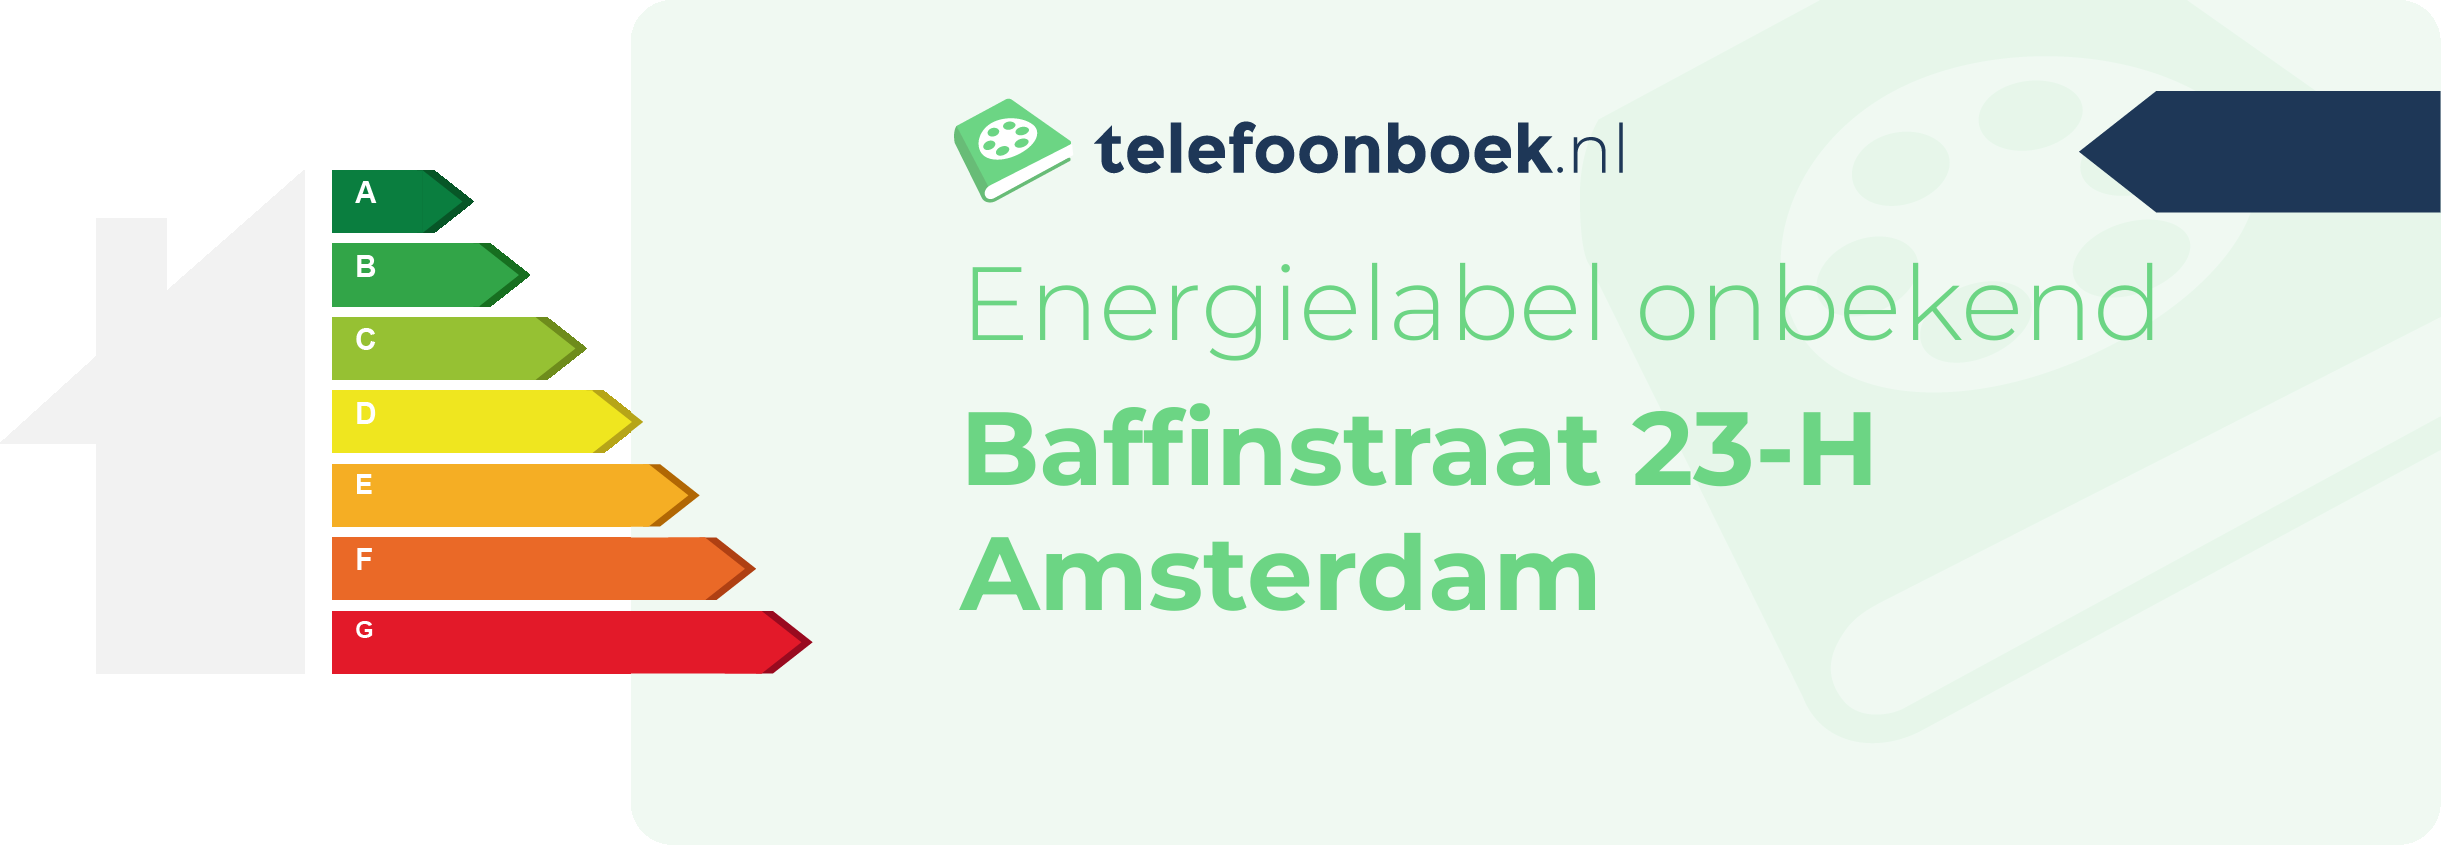 Energielabel Baffinstraat 23-H Amsterdam